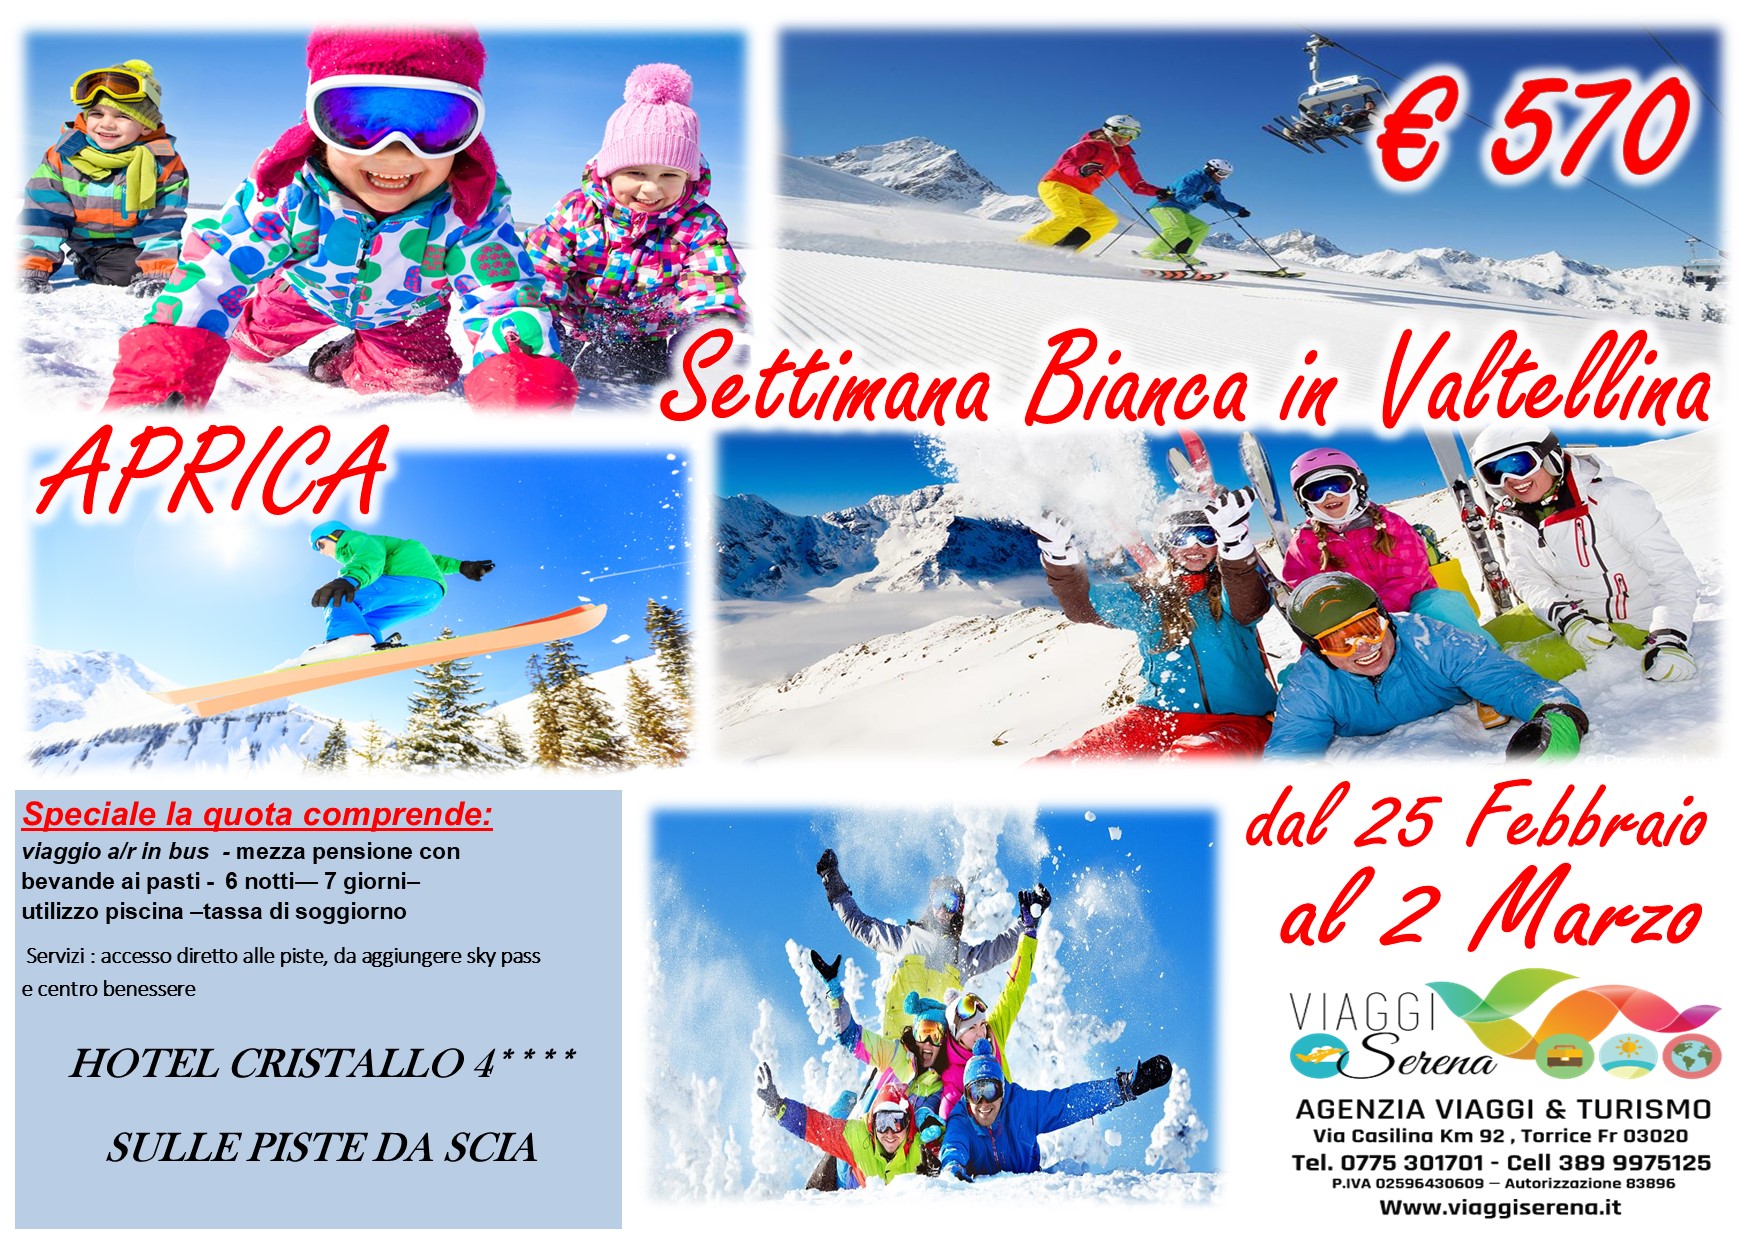 Viaggi di gruppo: Settimana Bianca ad APRICA “Valtellina” dal 25 Febbraio al 2 Marzo € 570,00